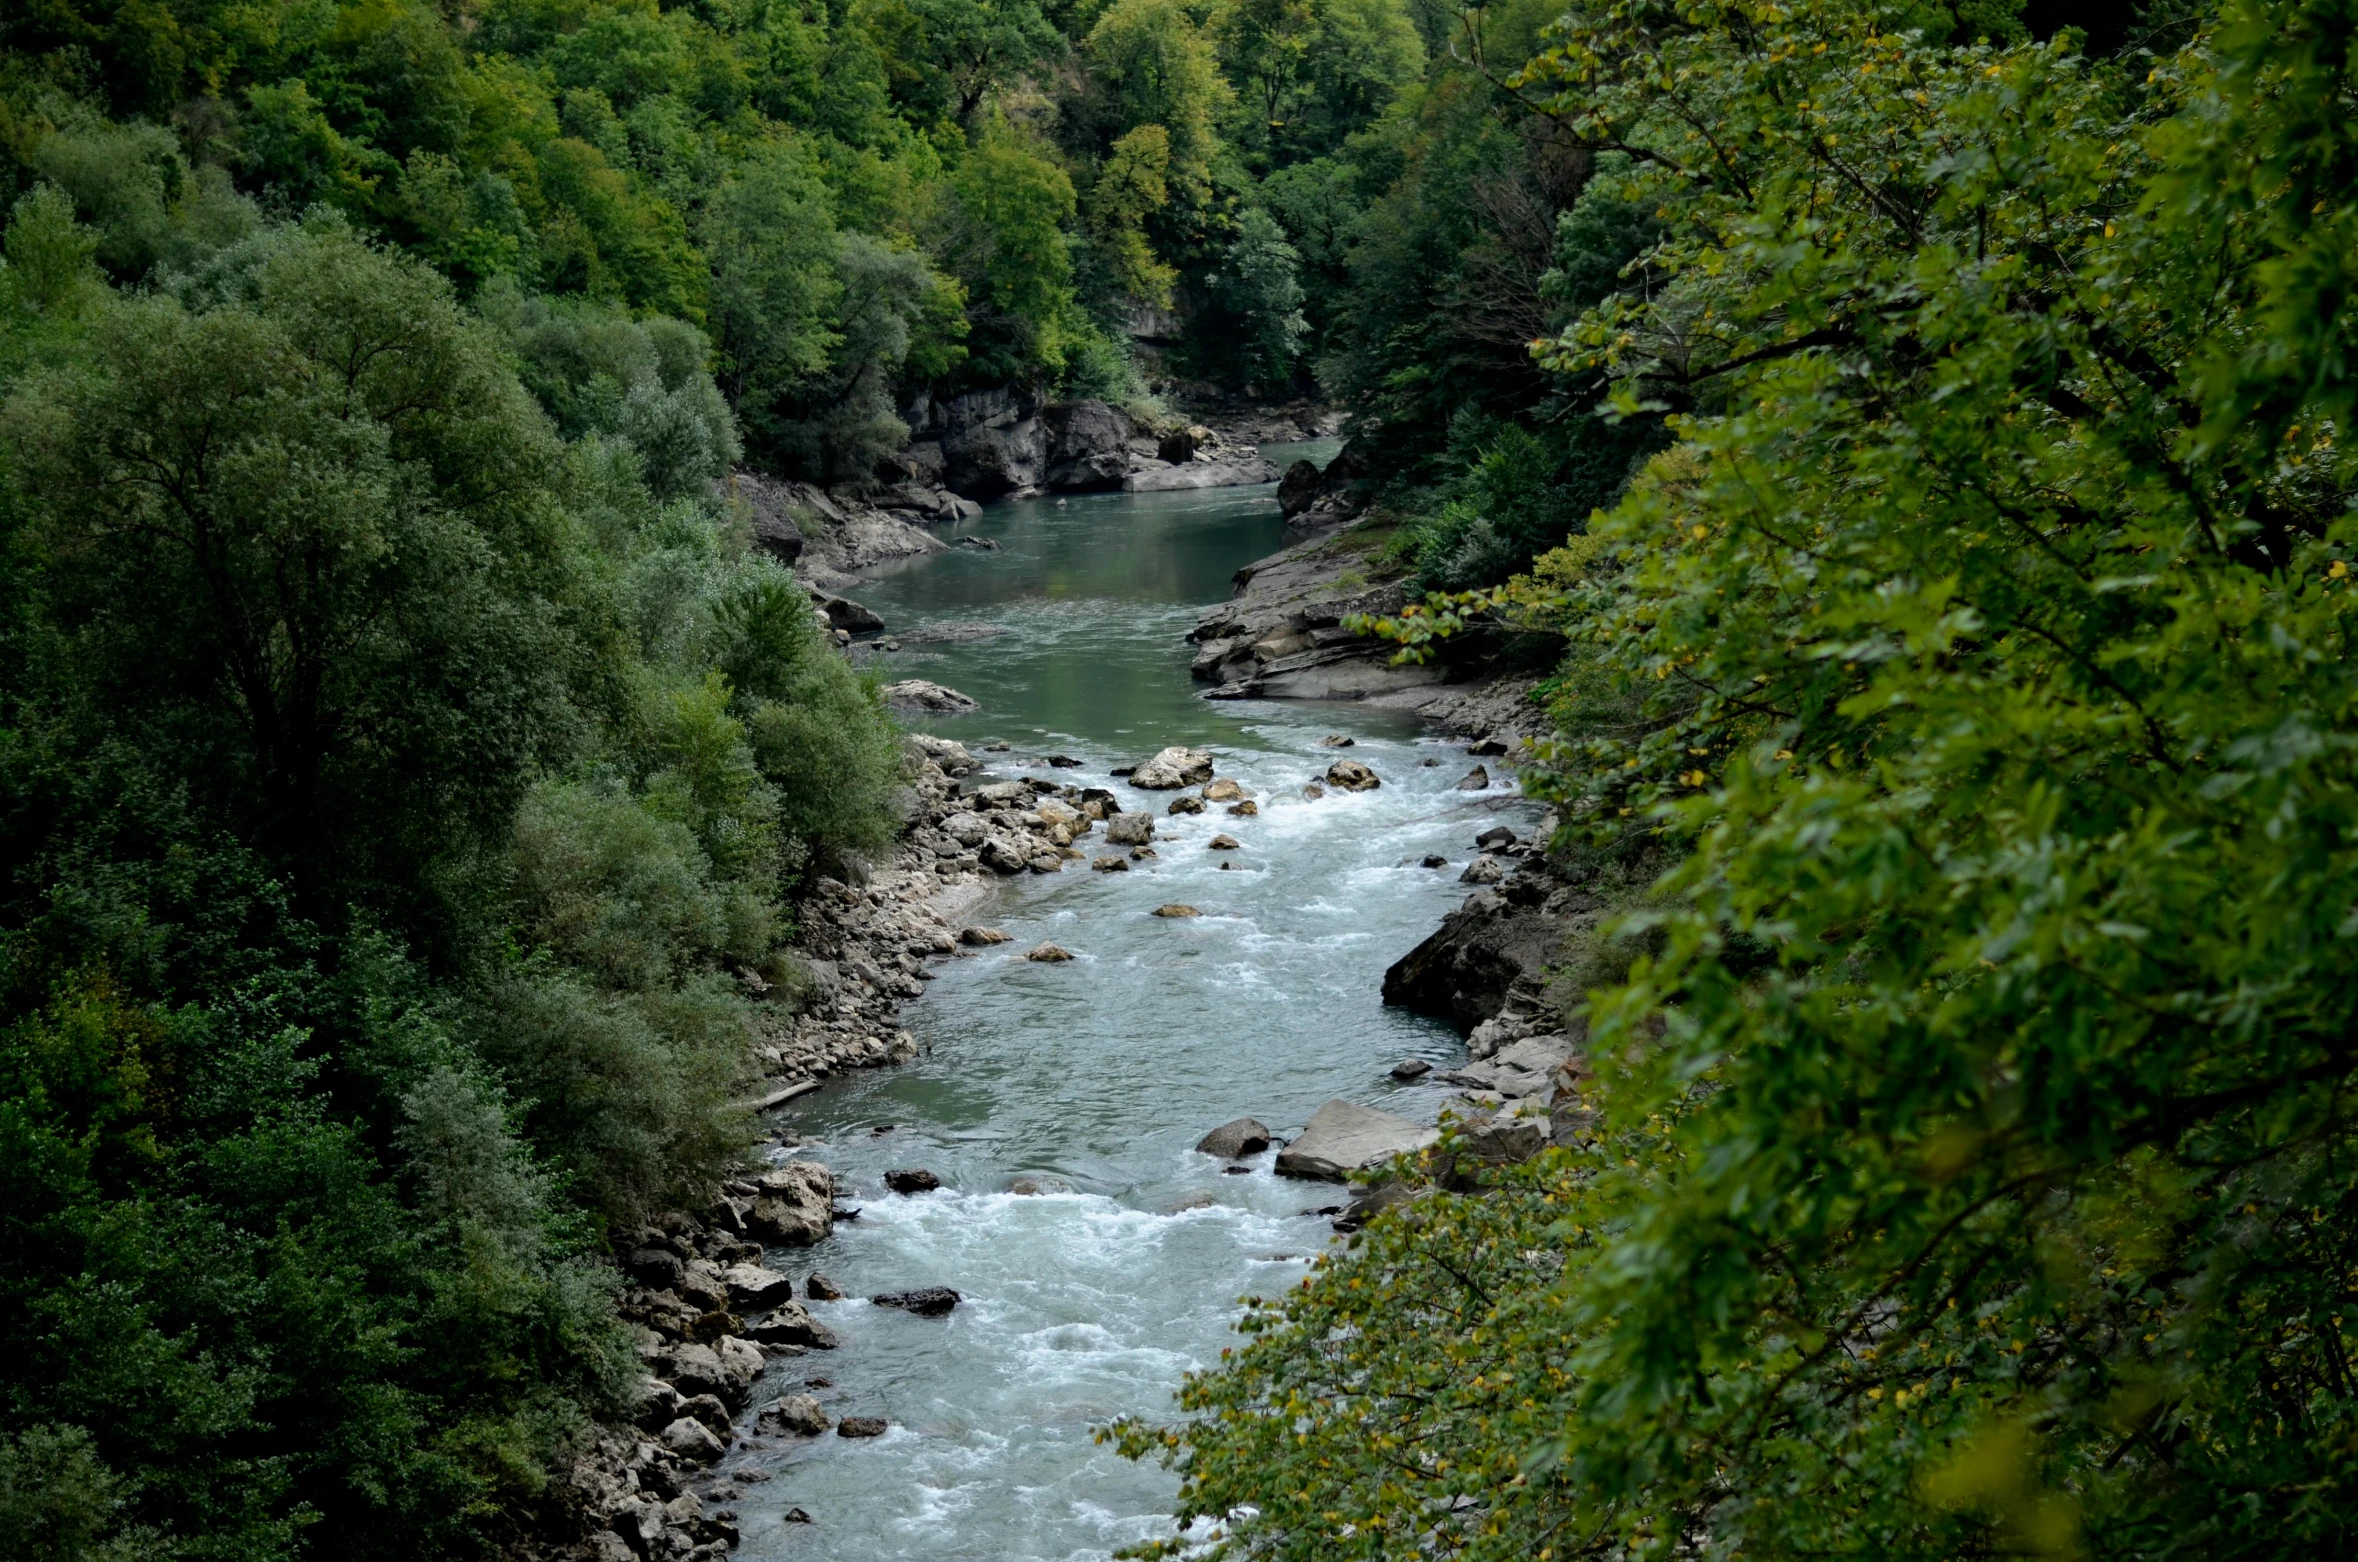 a river running through a lush green forest, by Muggur, pexels contest winner, hurufiyya, bosnian, 2 5 6 x 2 5 6 pixels, documentary still, concert